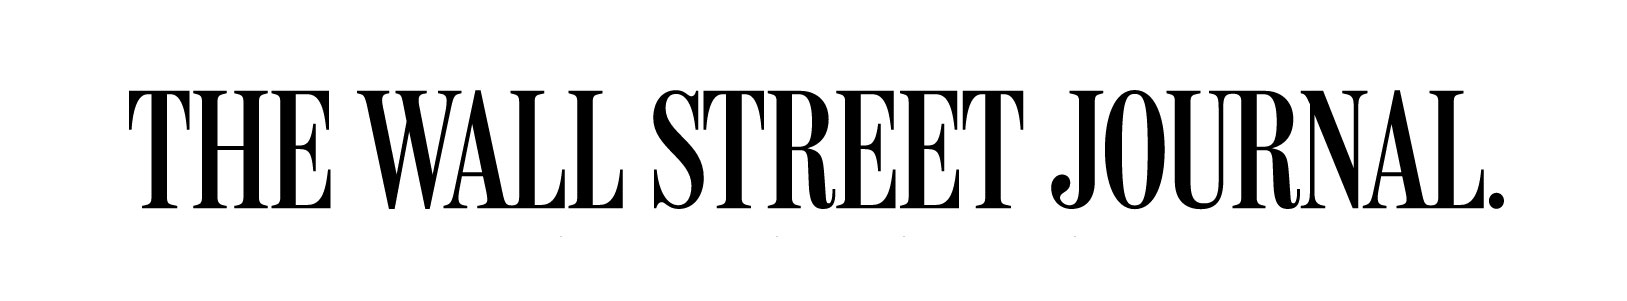 The Wall street Journal logo